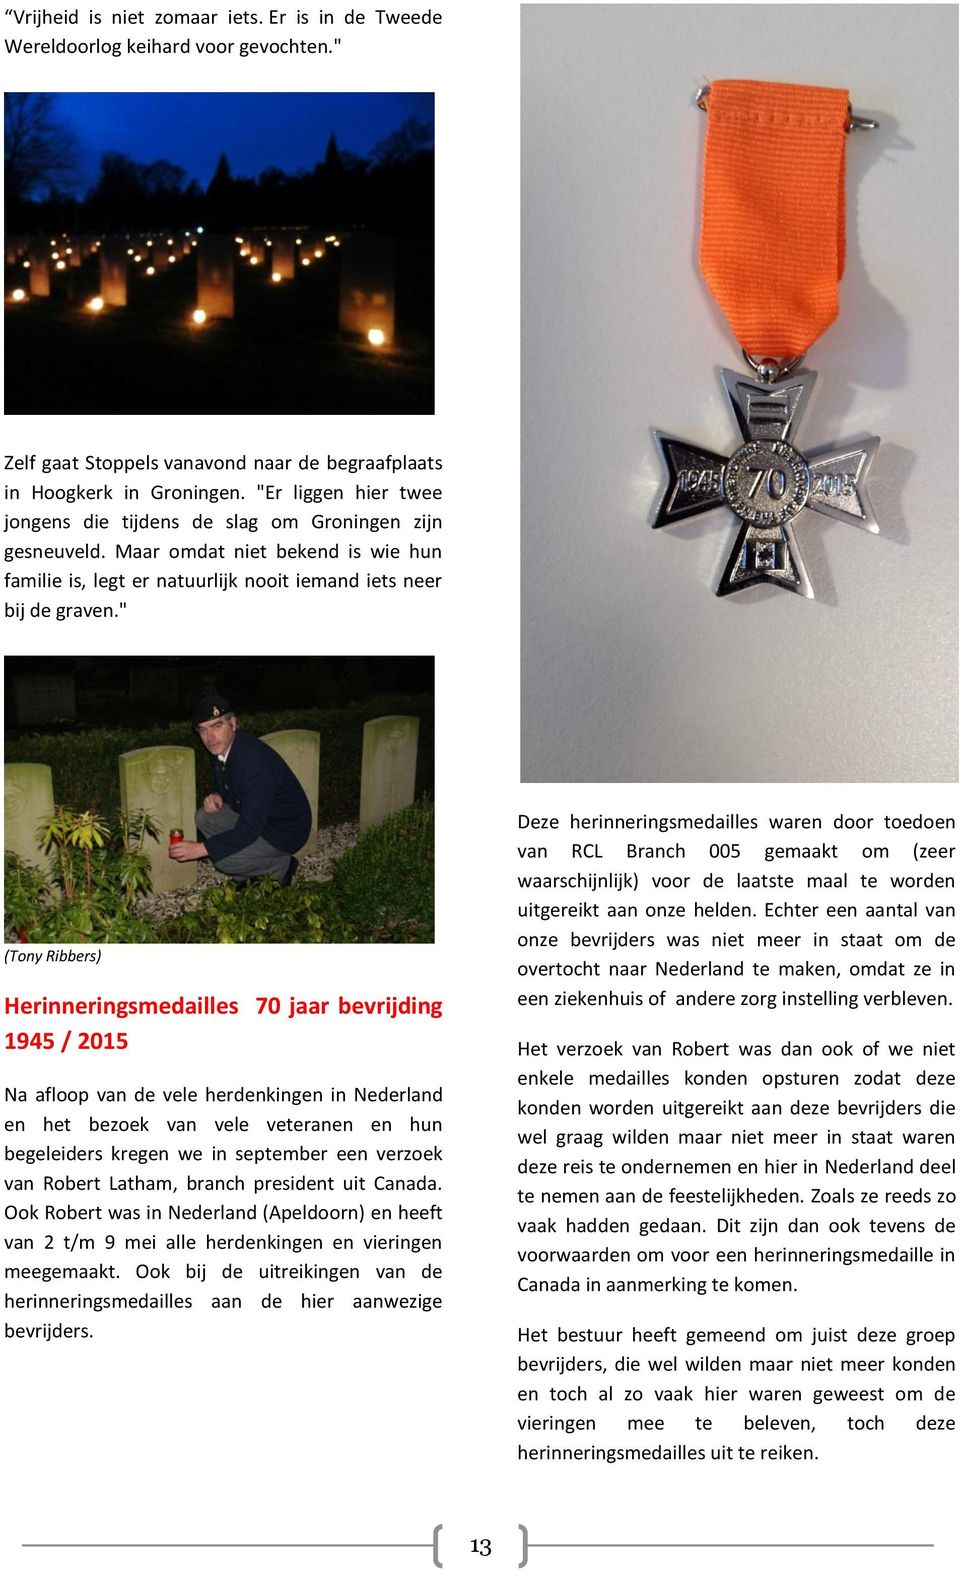 " (Tony Ribbers) Herinneringsmedailles 70 jaar bevrijding 1945 / 2015 Na afloop van de vele herdenkingen in Nederland en het bezoek van vele veteranen en hun begeleiders kregen we in september een